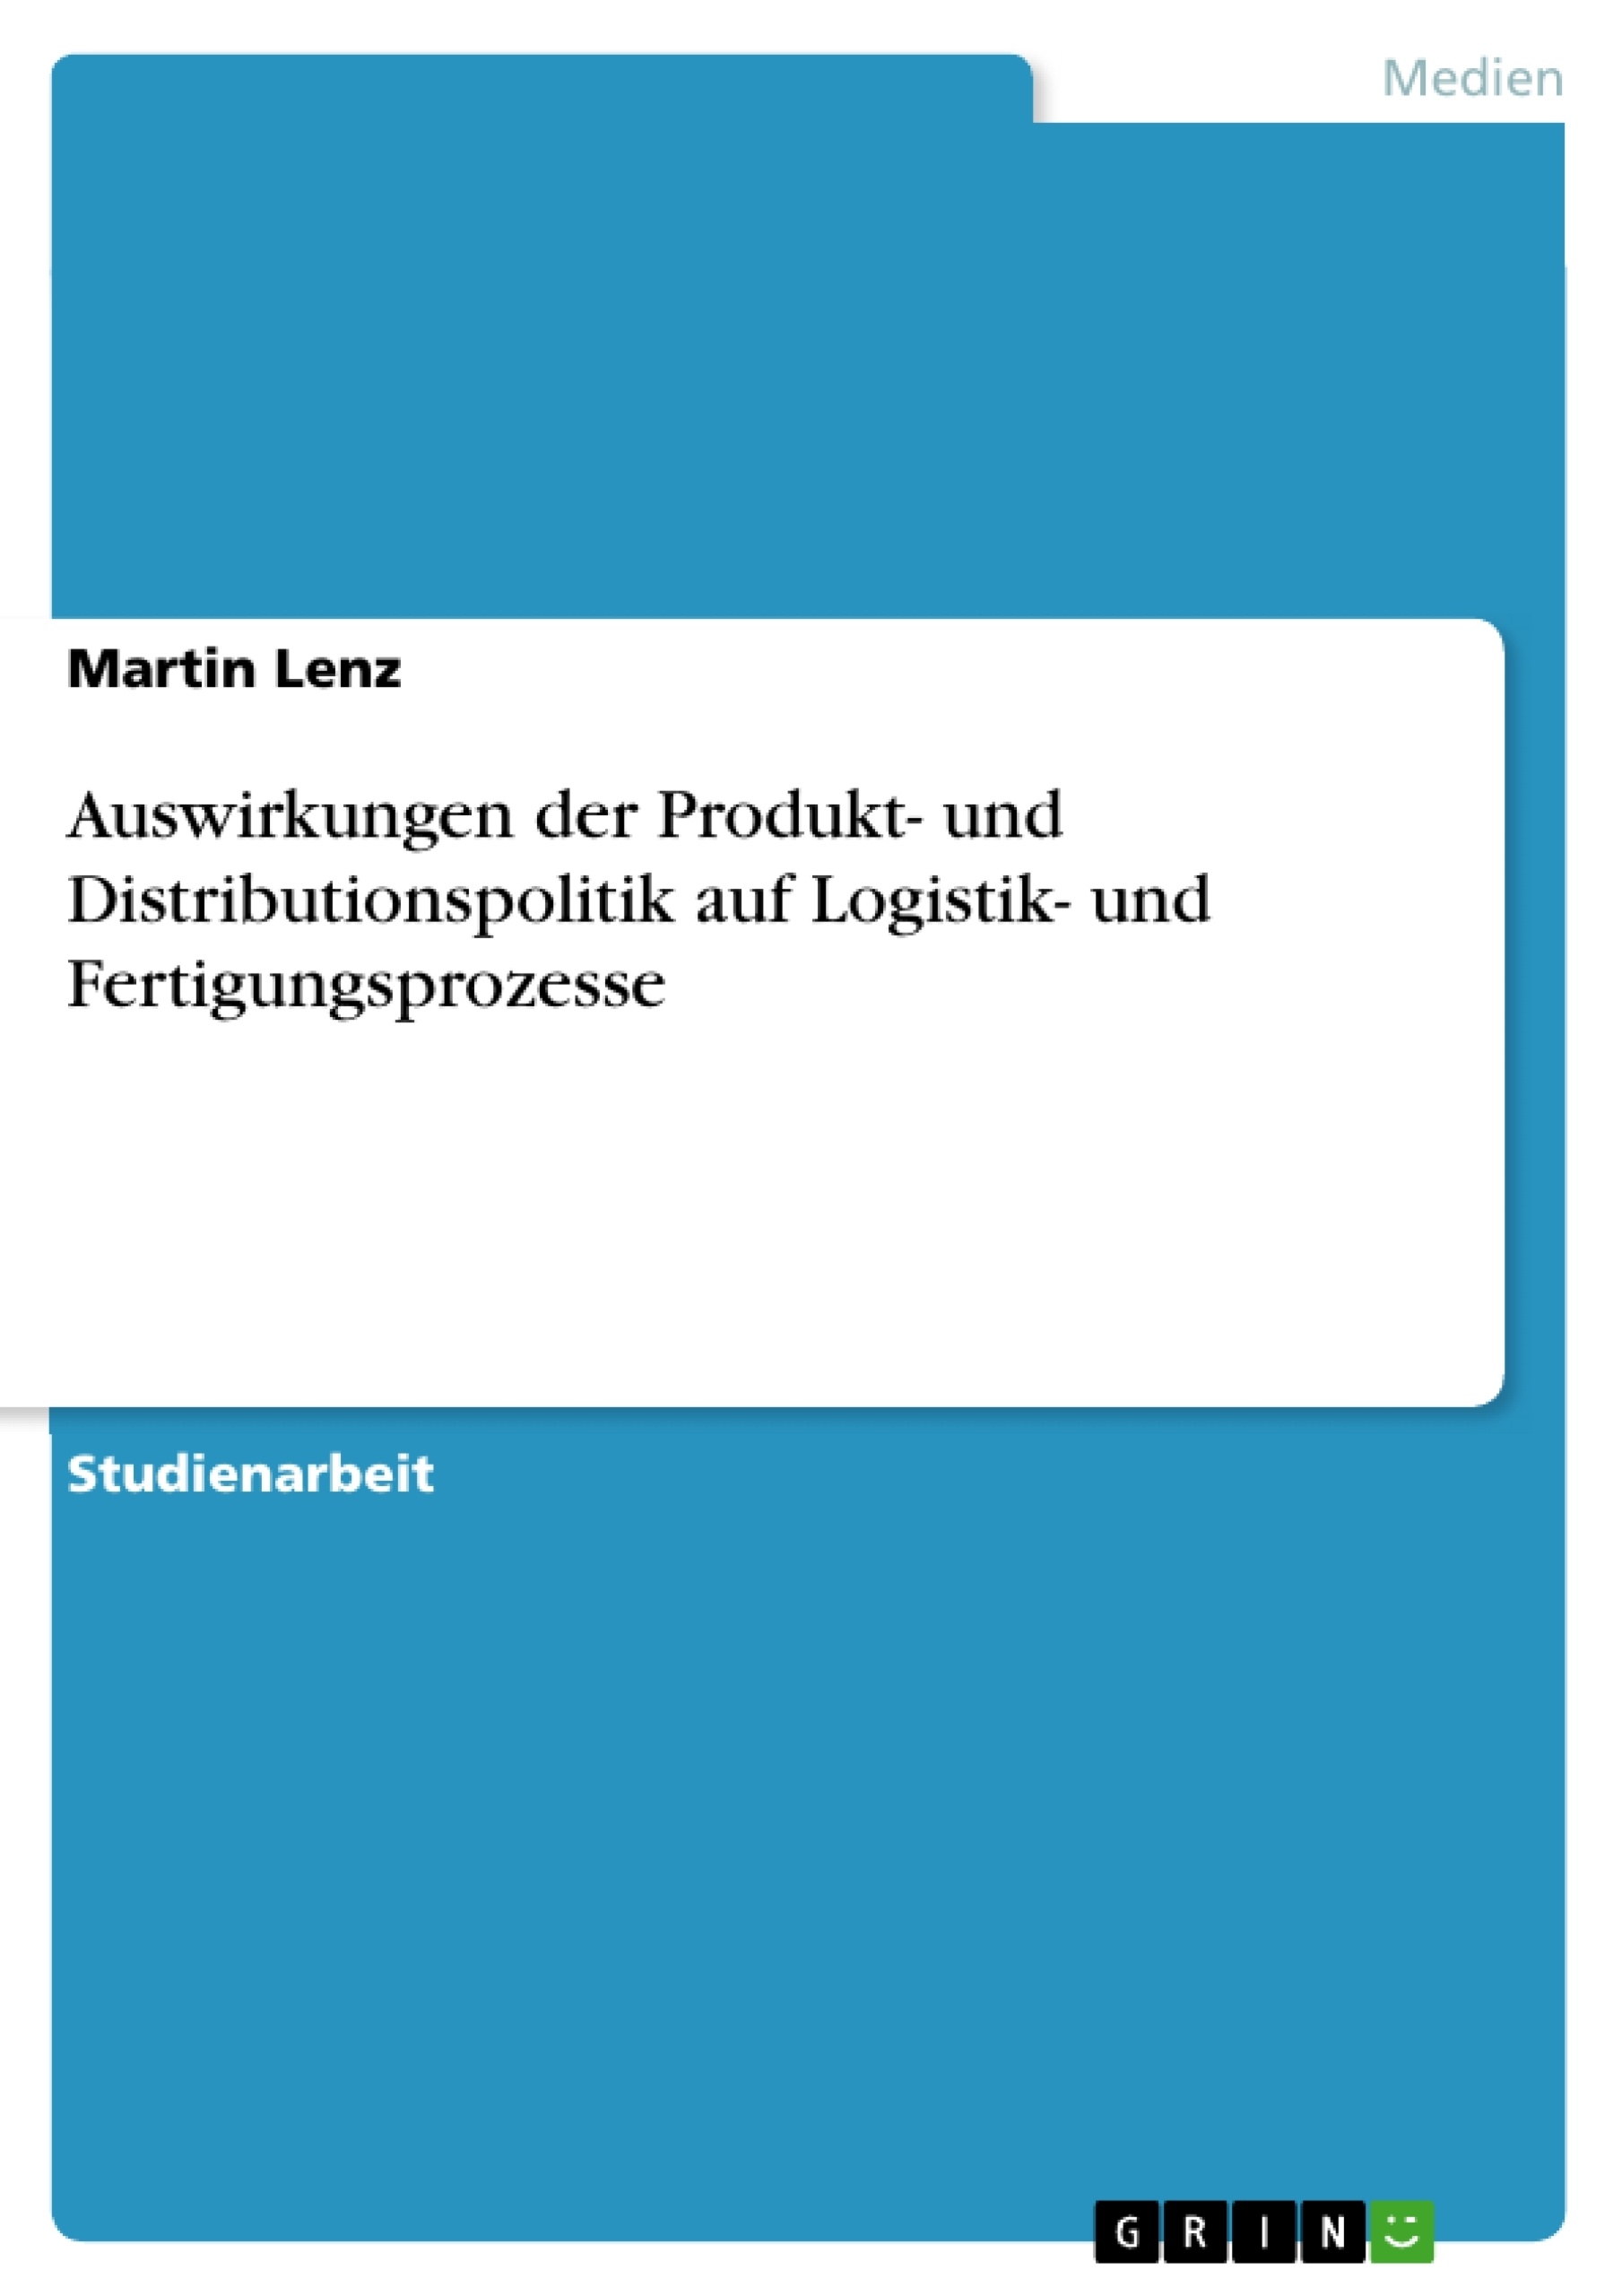 Título: Auswirkungen der Produkt- und Distributionspolitik auf Logistik- und Fertigungsprozesse